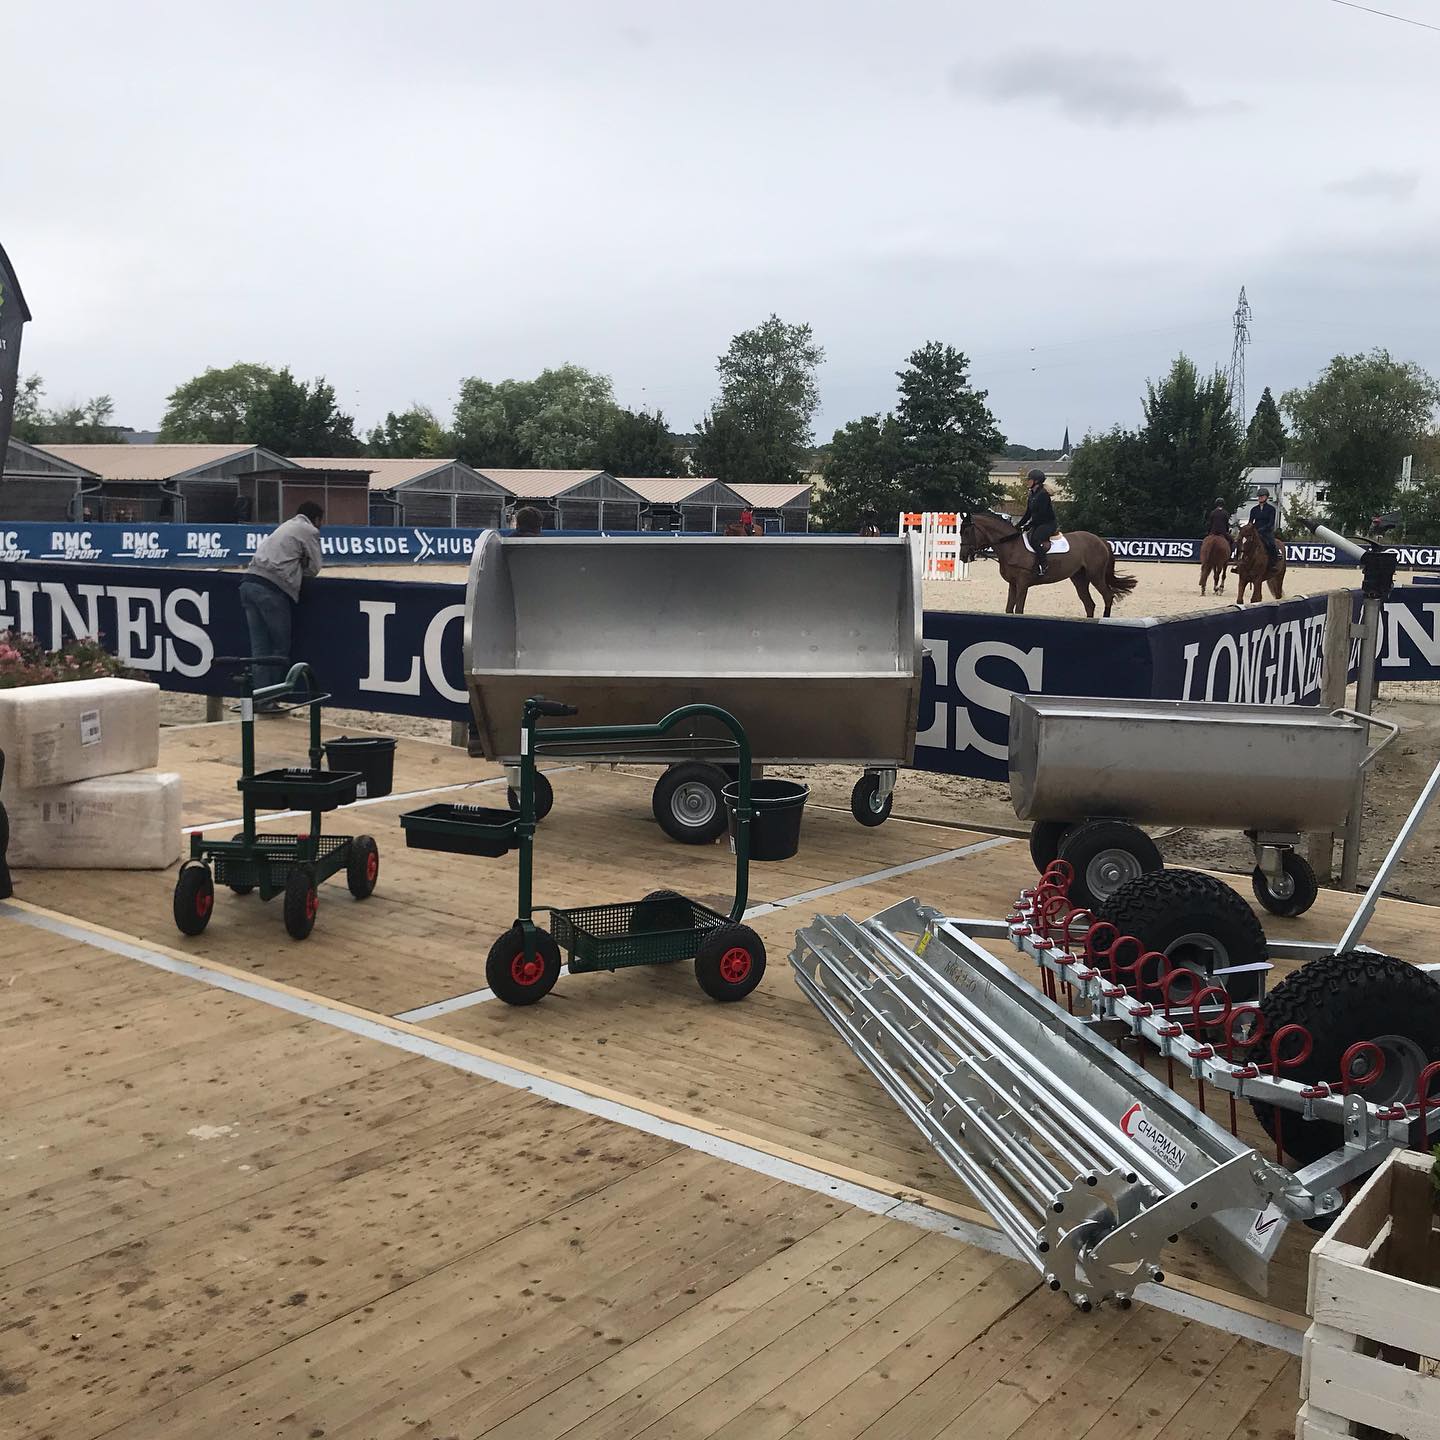 Notre stand au Longines Deauville Classic 2019.